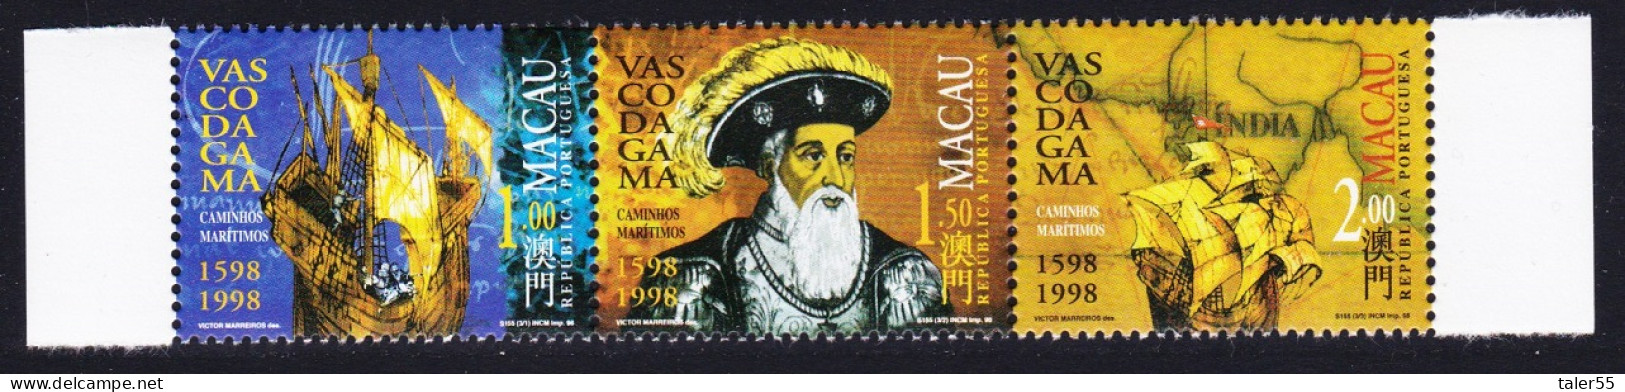 Macao Macau Vasco Da Gama ERROR '1598' Strip Of 3v 1998 MNH SG#1040-1042 Sc#926-928 - Neufs